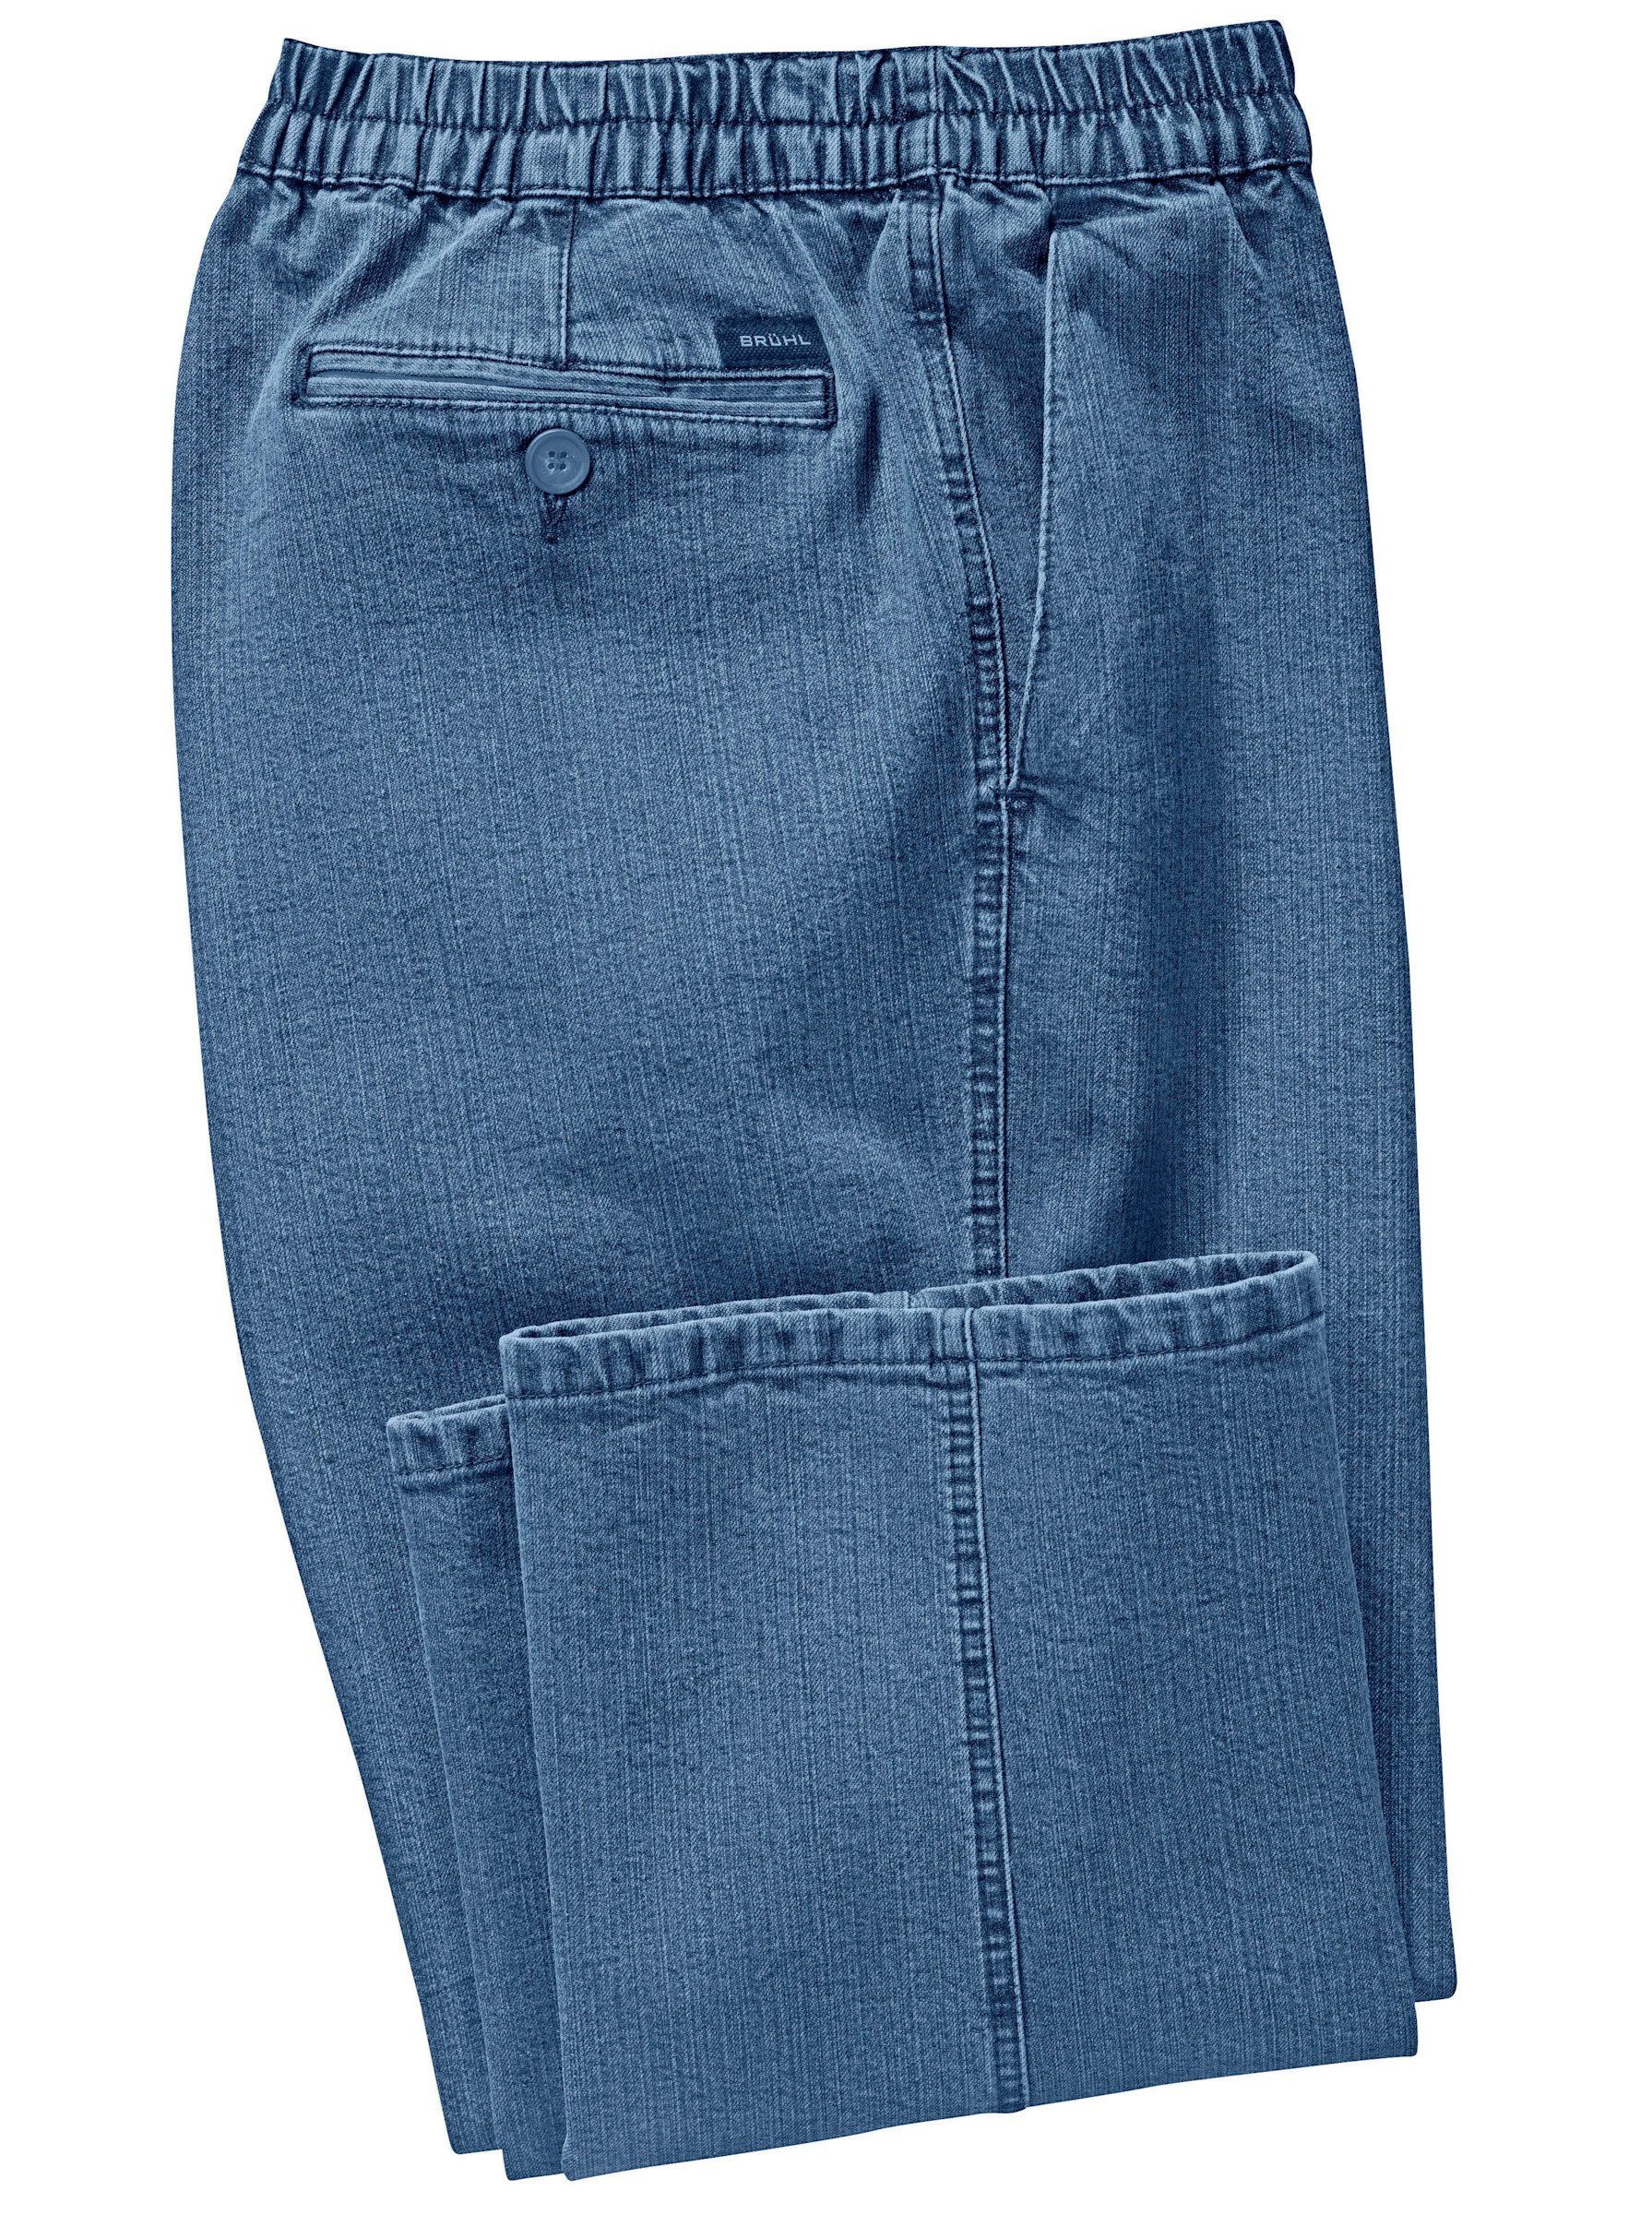 Brühl Bequeme Jeans blue-bleached